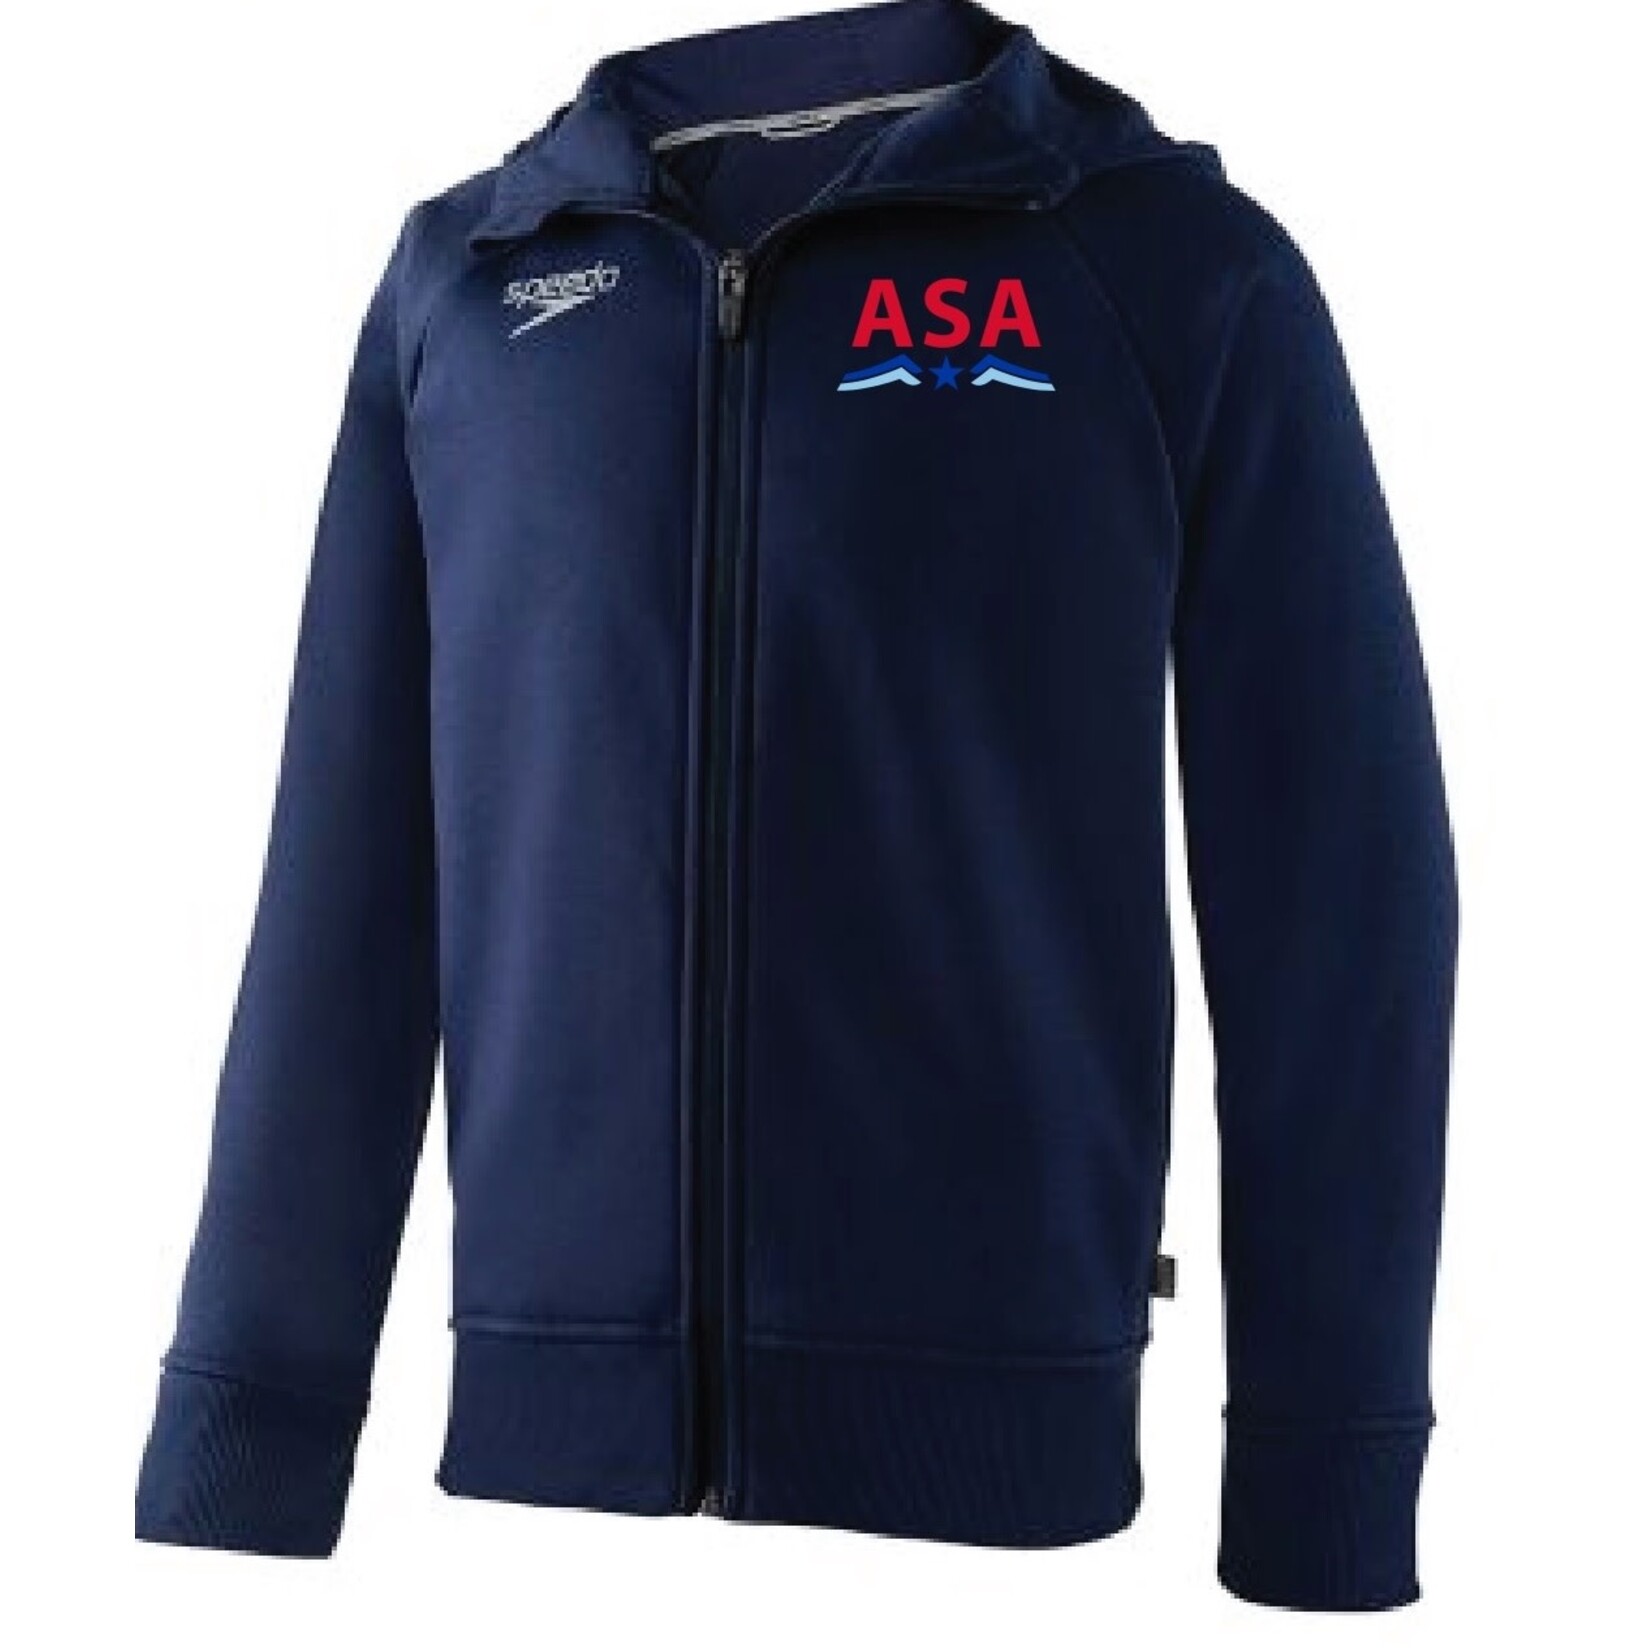 ASA ASA Youth Team Jacket